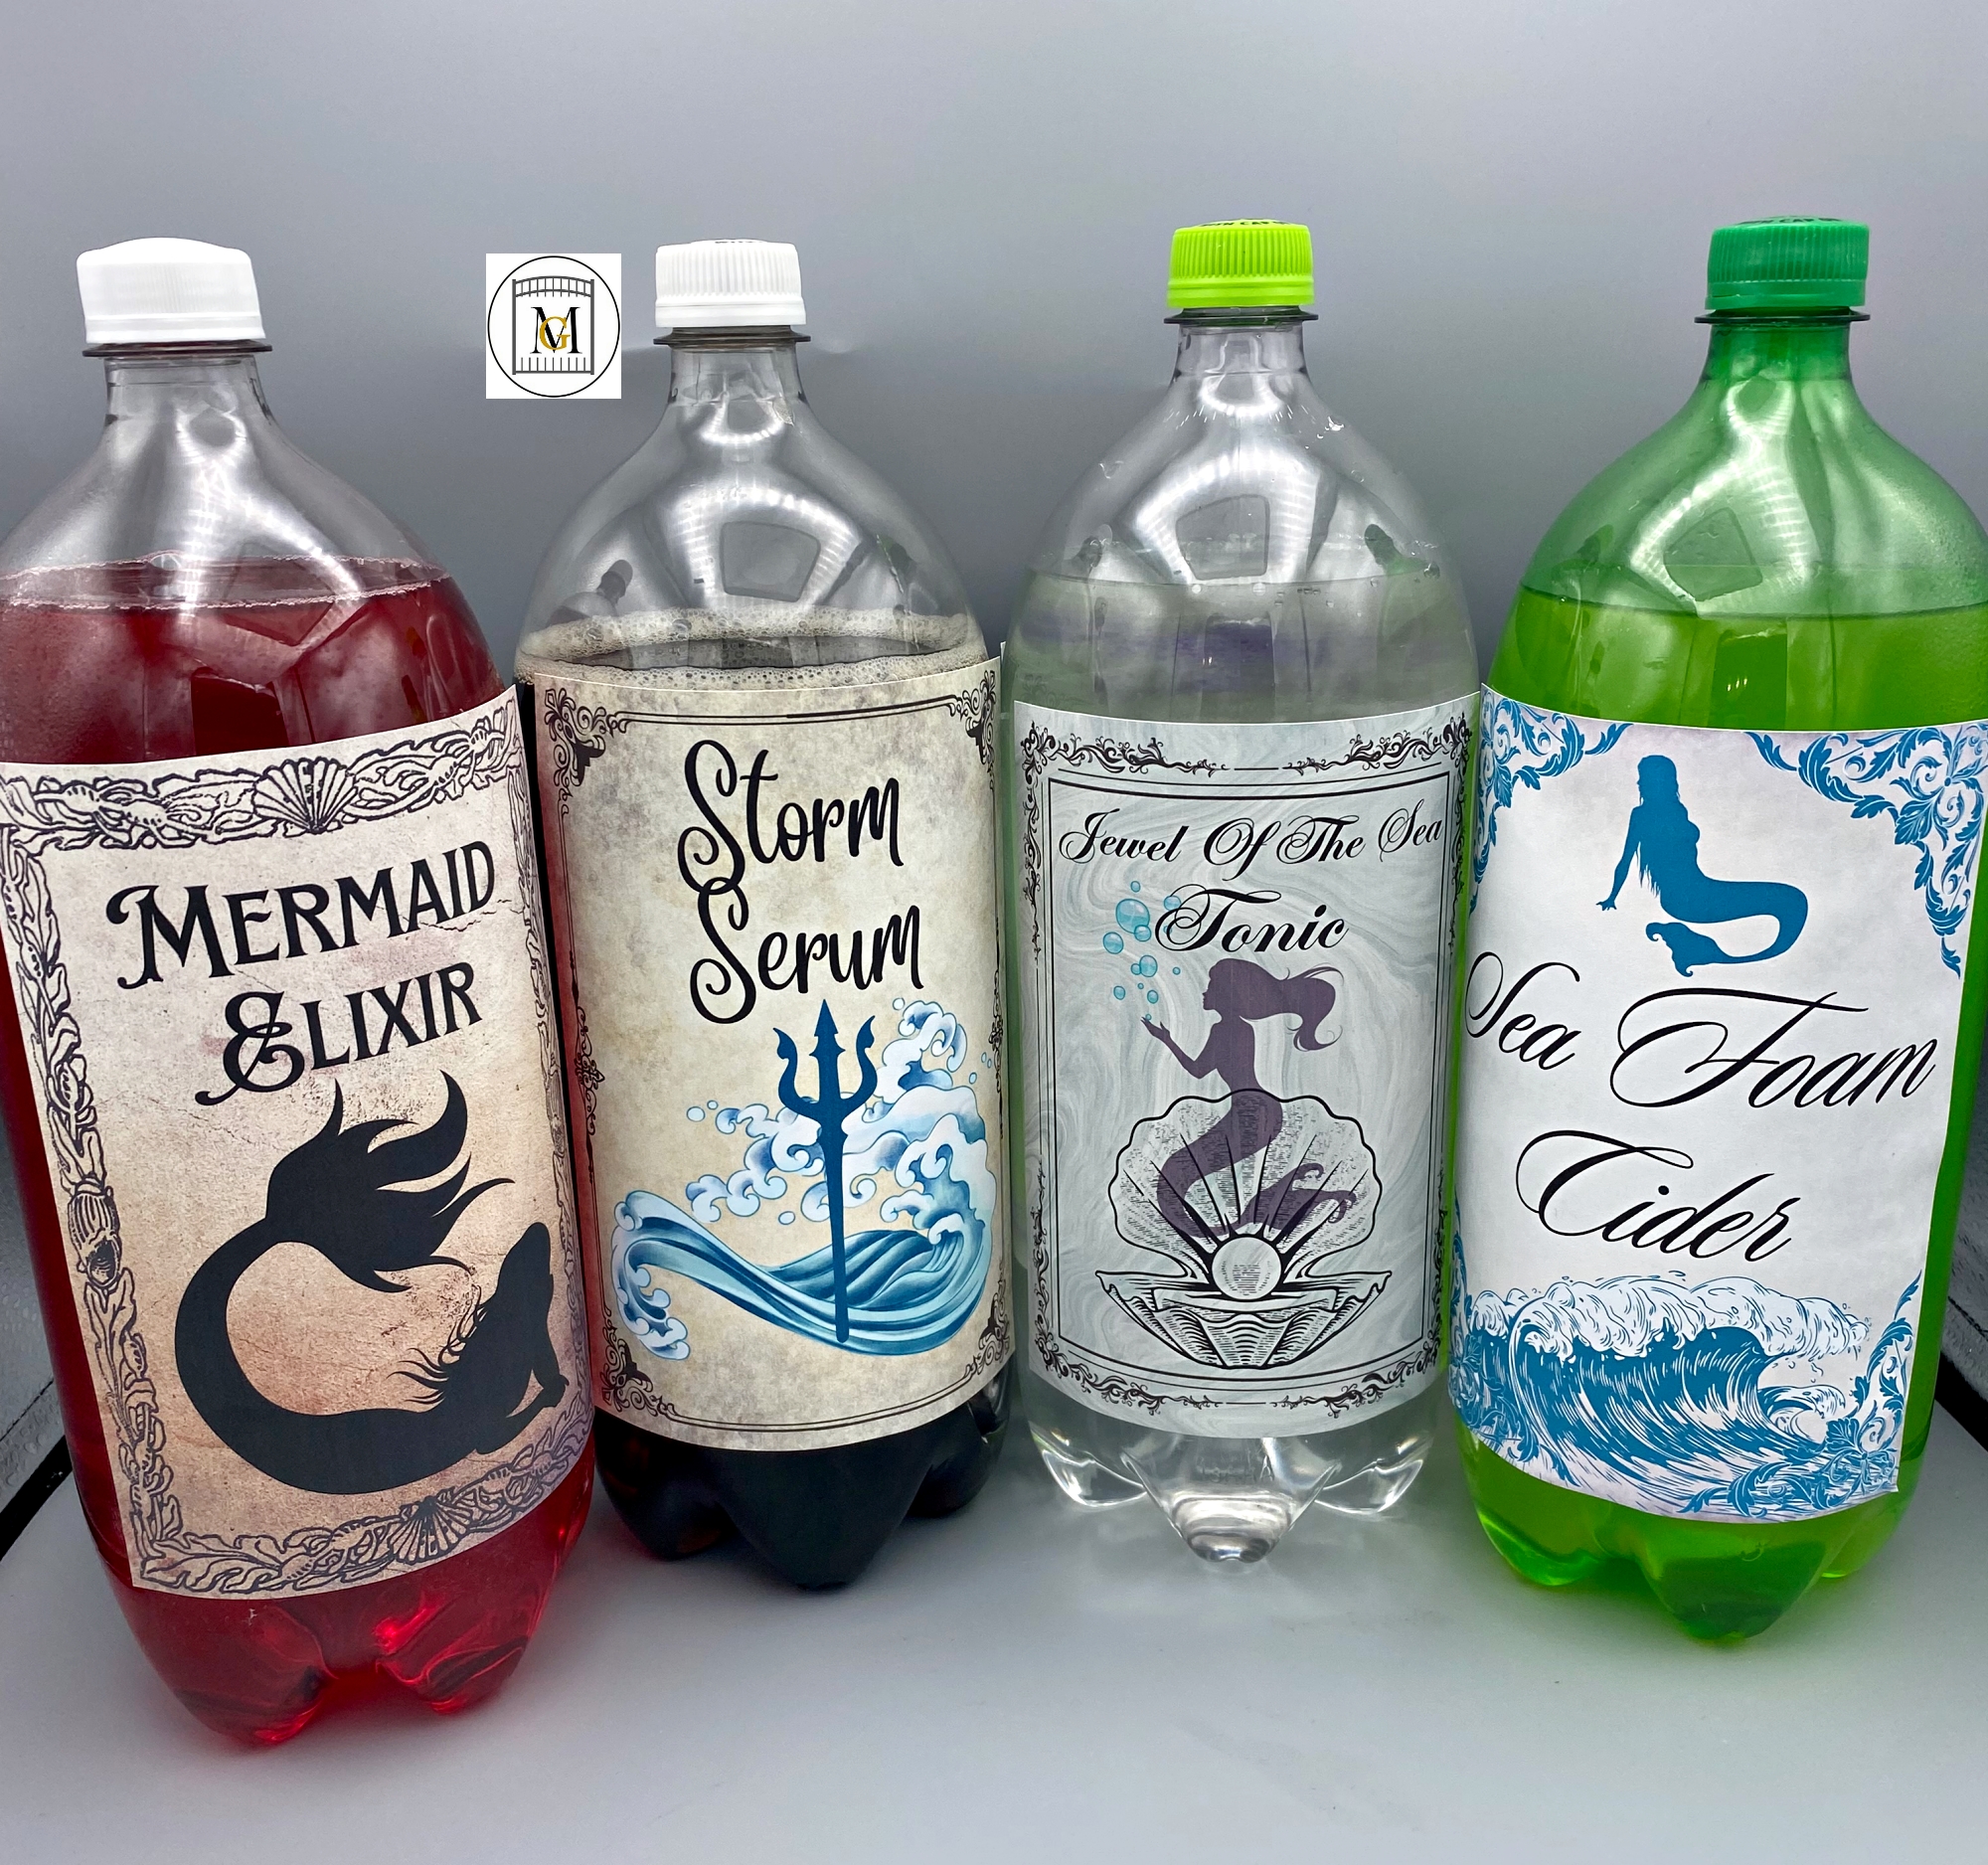 Mermaid 2-Liter Bottle Label